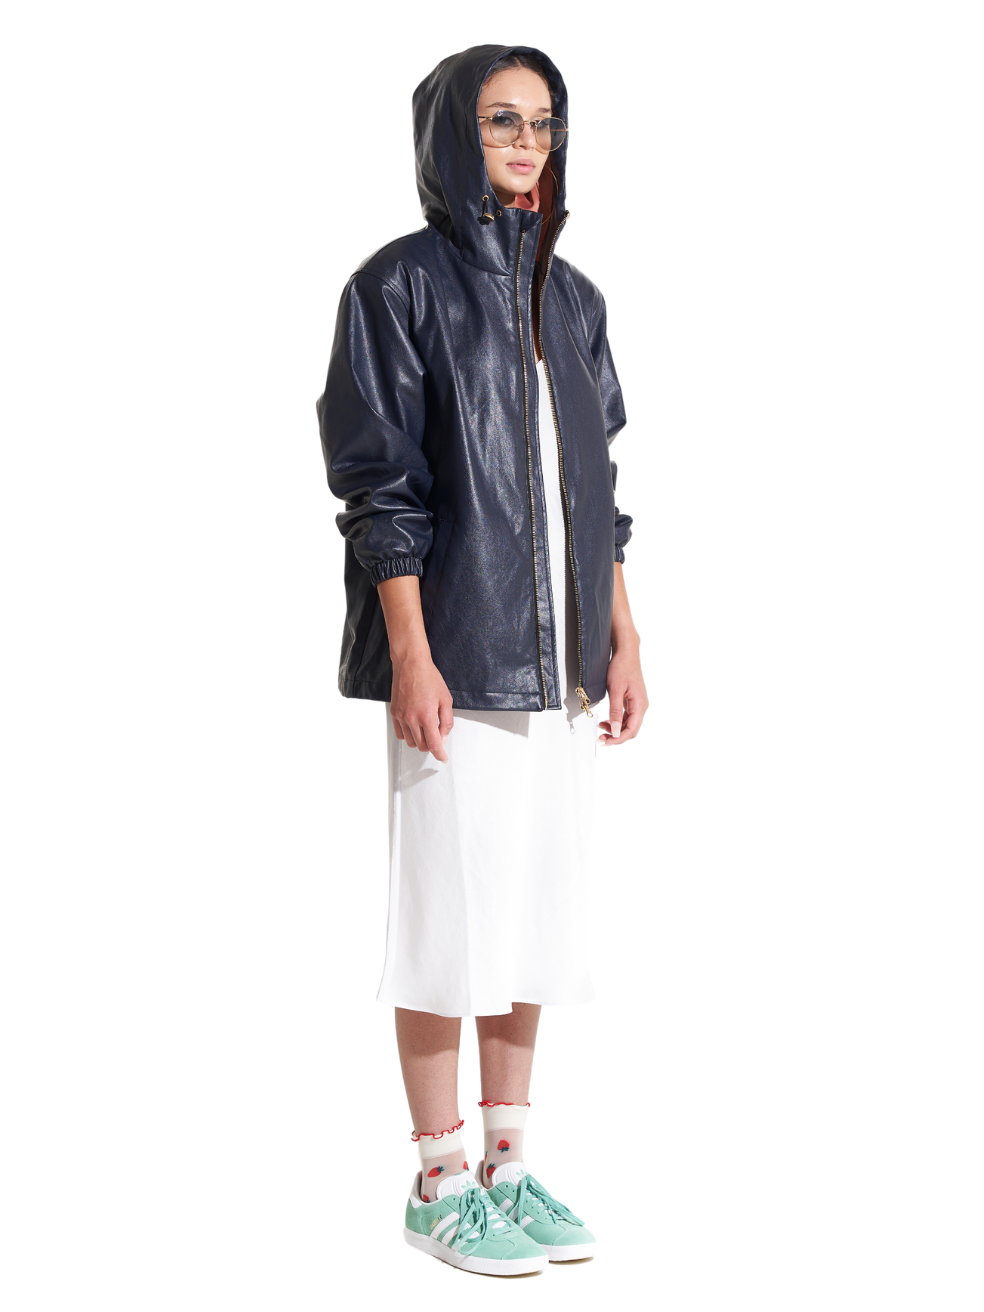 Hunter Navy Blue Indigo Sustainable Outerwear Animal Free Leather Raincoat